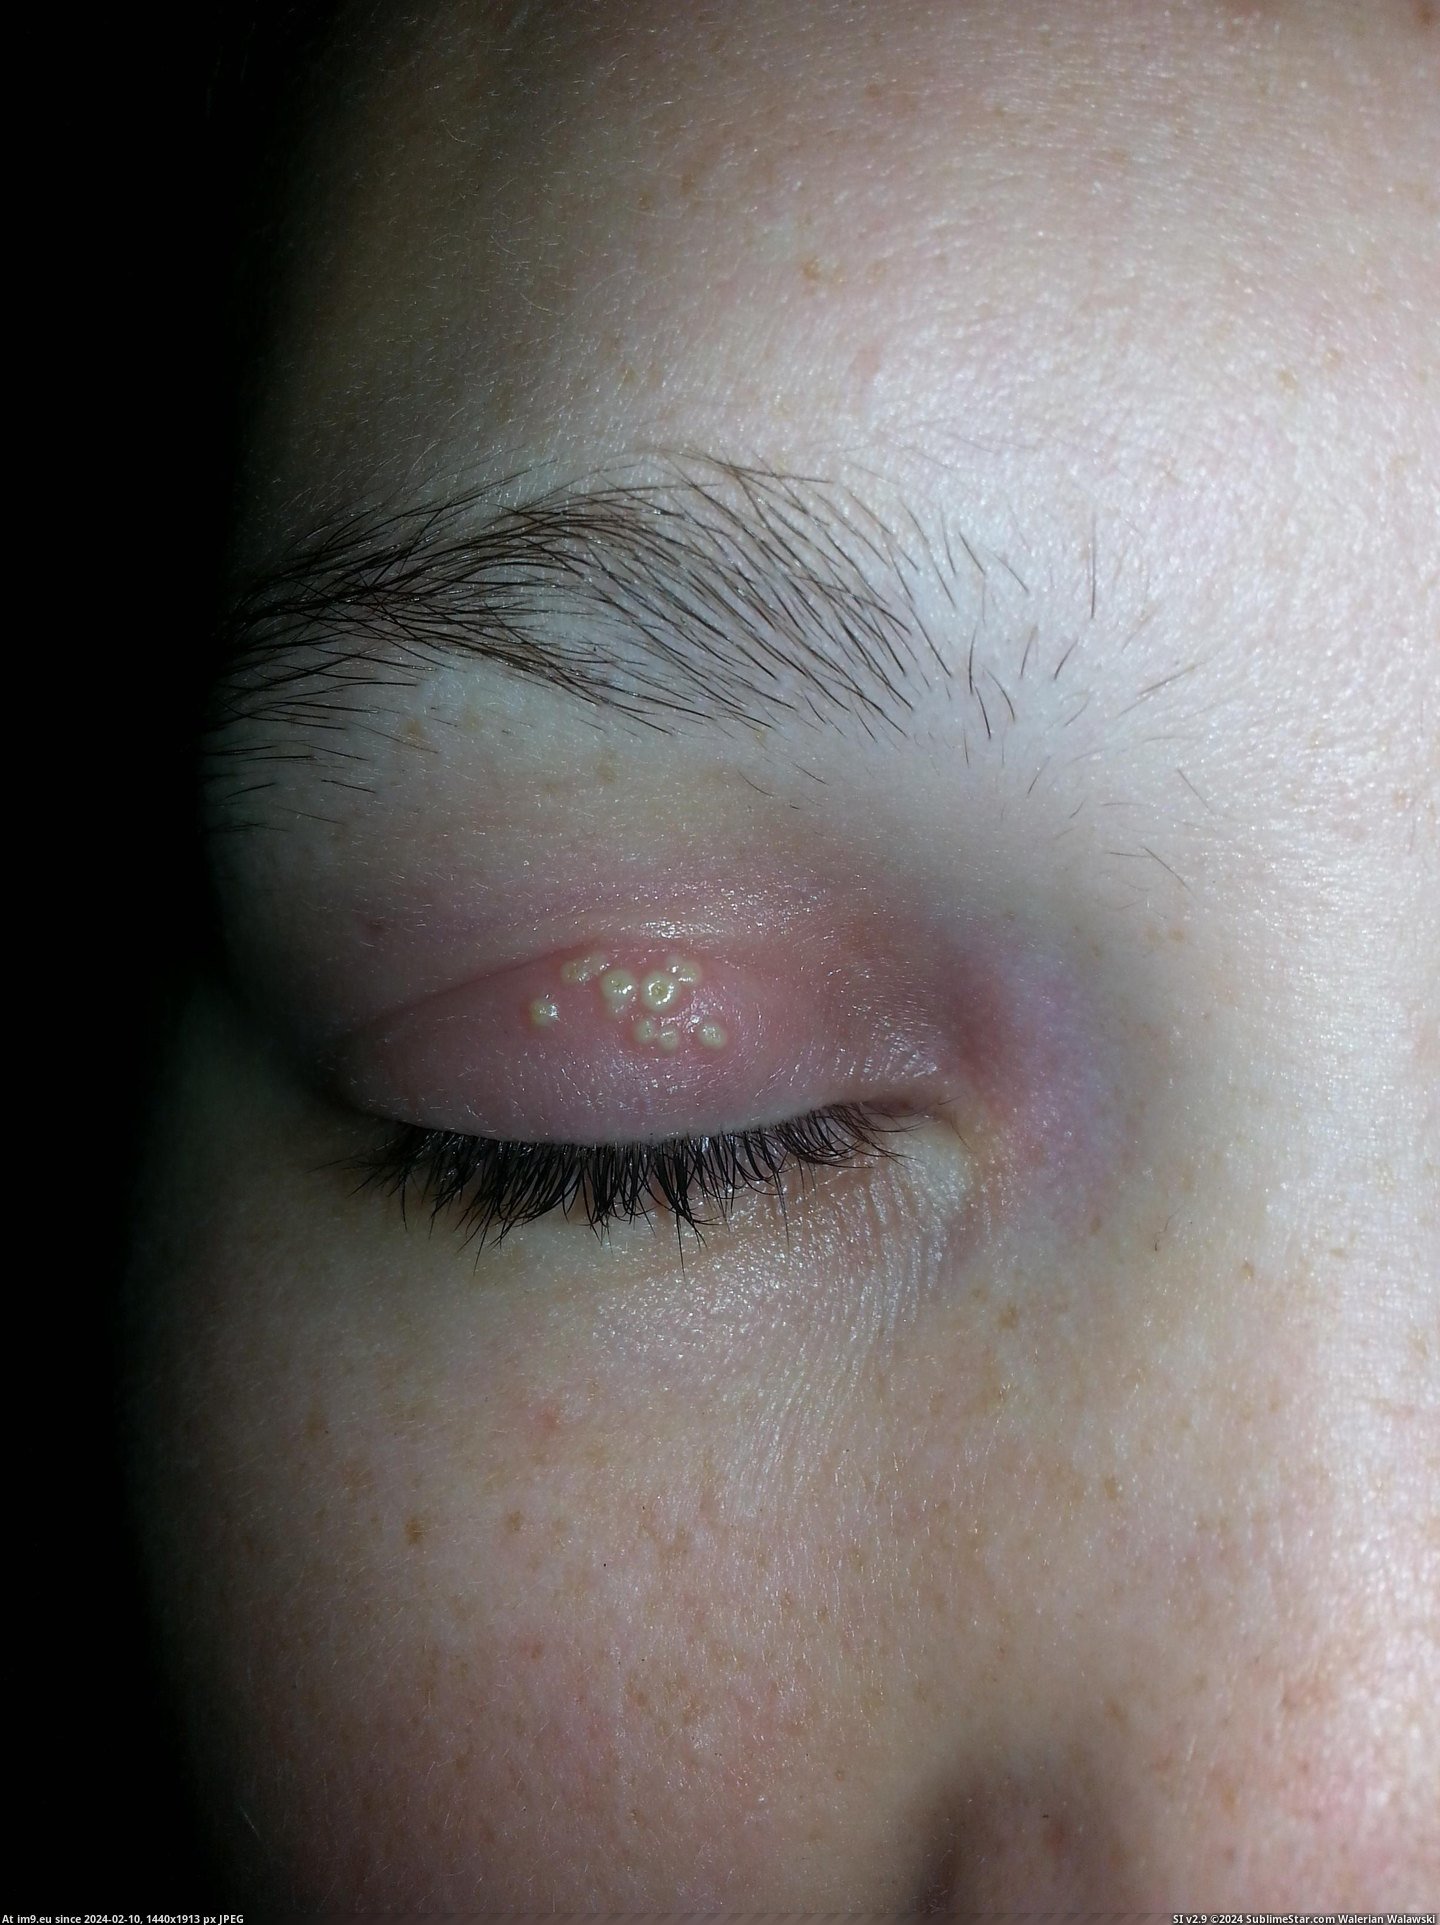 #Wtf #Woke #Eyelid #Wife [Wtf] My wife woke up with this on her eyelid. Wtf is it? Pic. (Obraz z album My r/WTF favs))